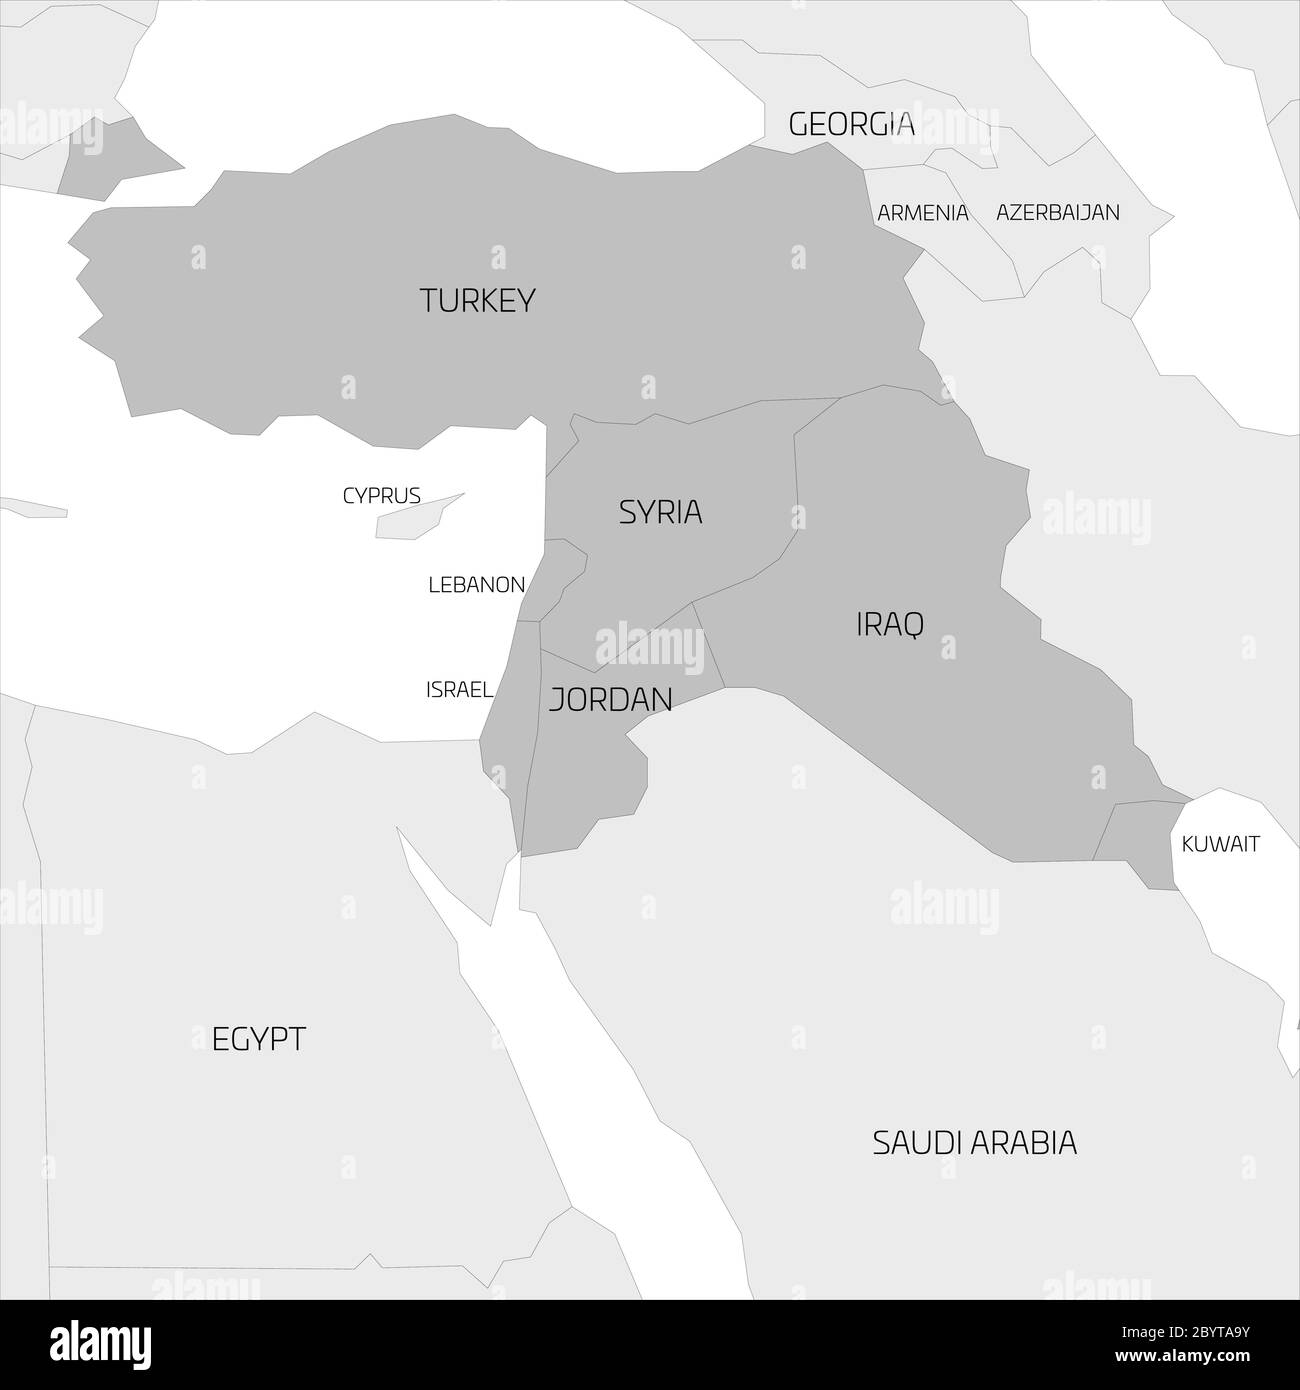 Mappa della regione transcontinentale del Medio Oriente o del Vicino Oriente con la Turchia, la Siria, l'Iraq, la Giordania, il Libano e Israele evidenziati. Mappa grigia piatta con confini neri sottili. Illustrazione Vettoriale